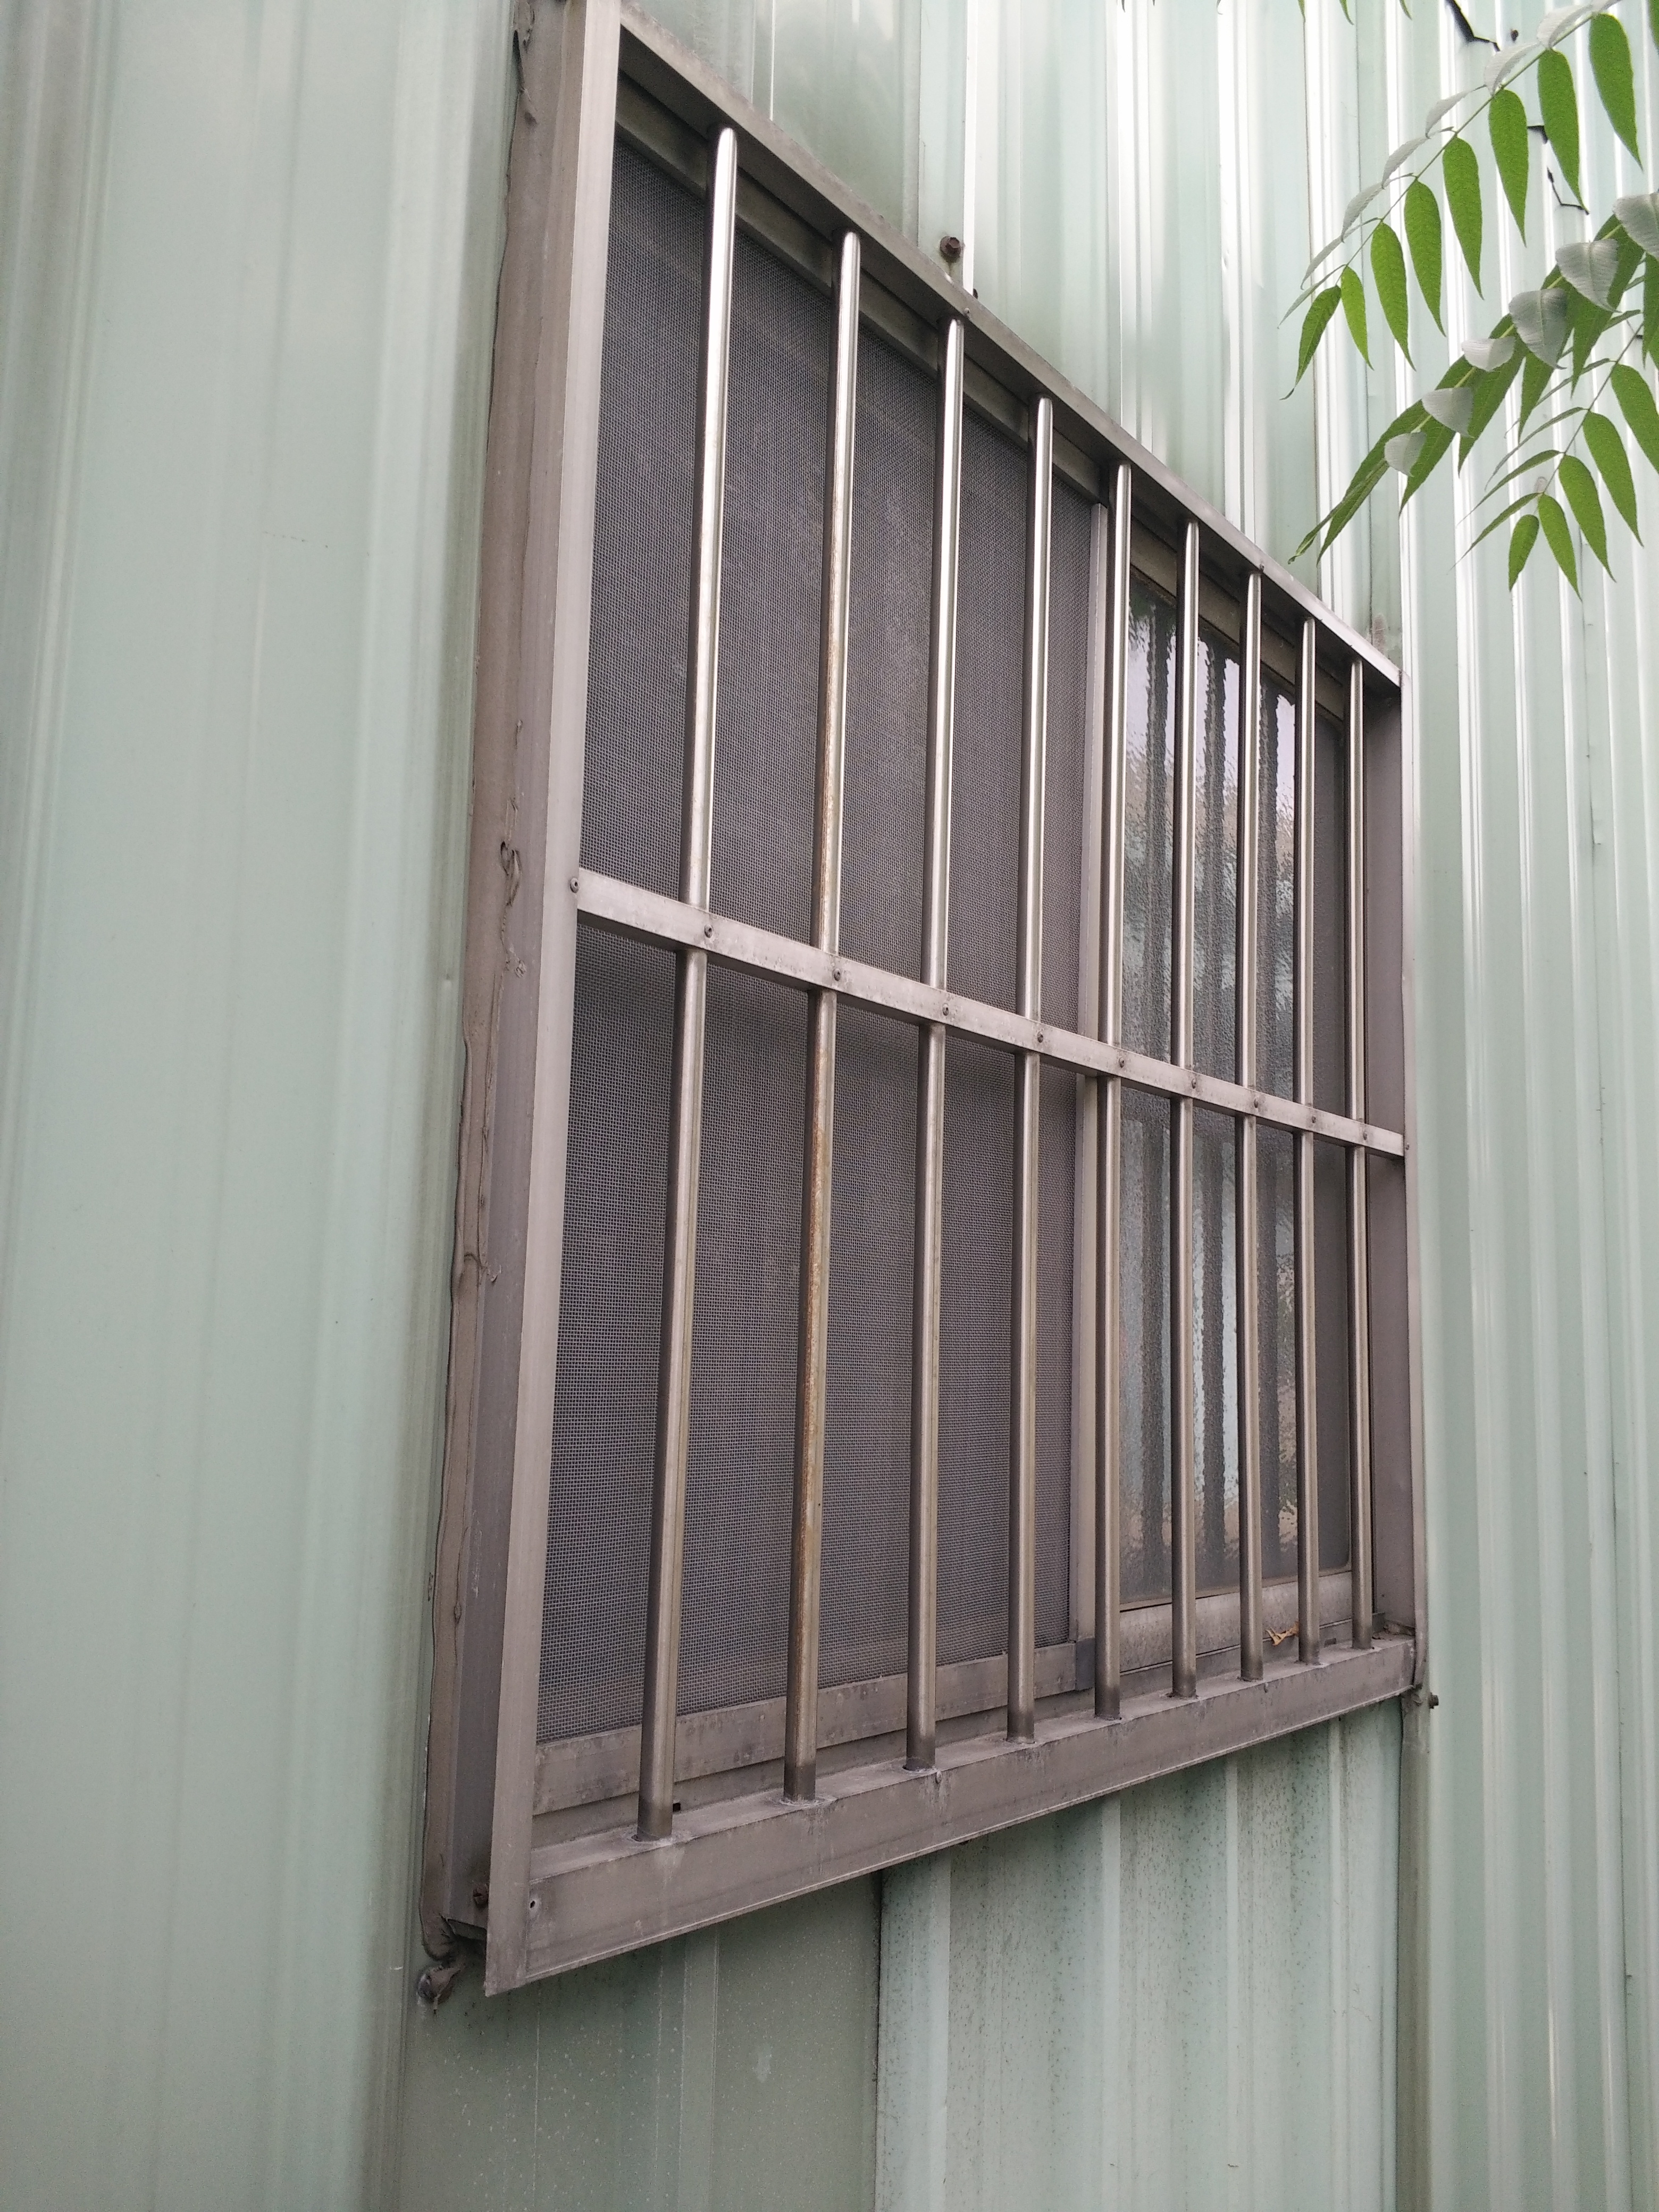 防盜鐵窗,金屬工程,金屬訂做常識,工程知識,鐵工工程介紹,鐵窗專用鐵管